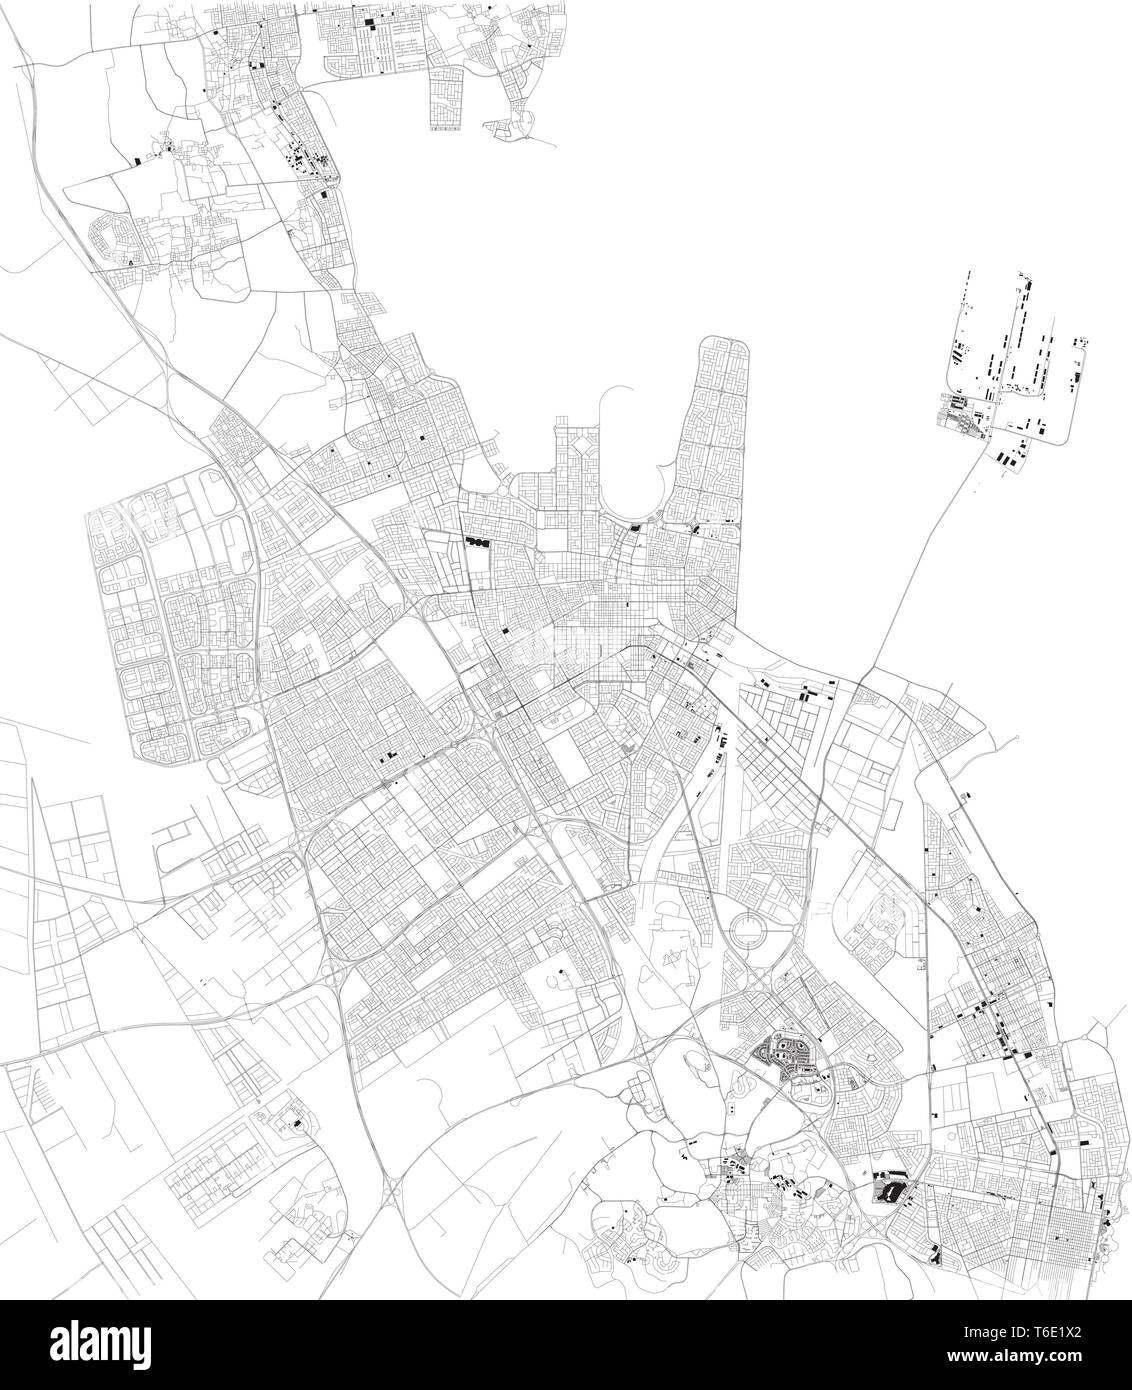 Mappa satellitare di Dammam. È la capitale della provincia orientale dell'Arabia Saudita. Mappa di strade e di edifici del centro storico. Asia Illustrazione Vettoriale